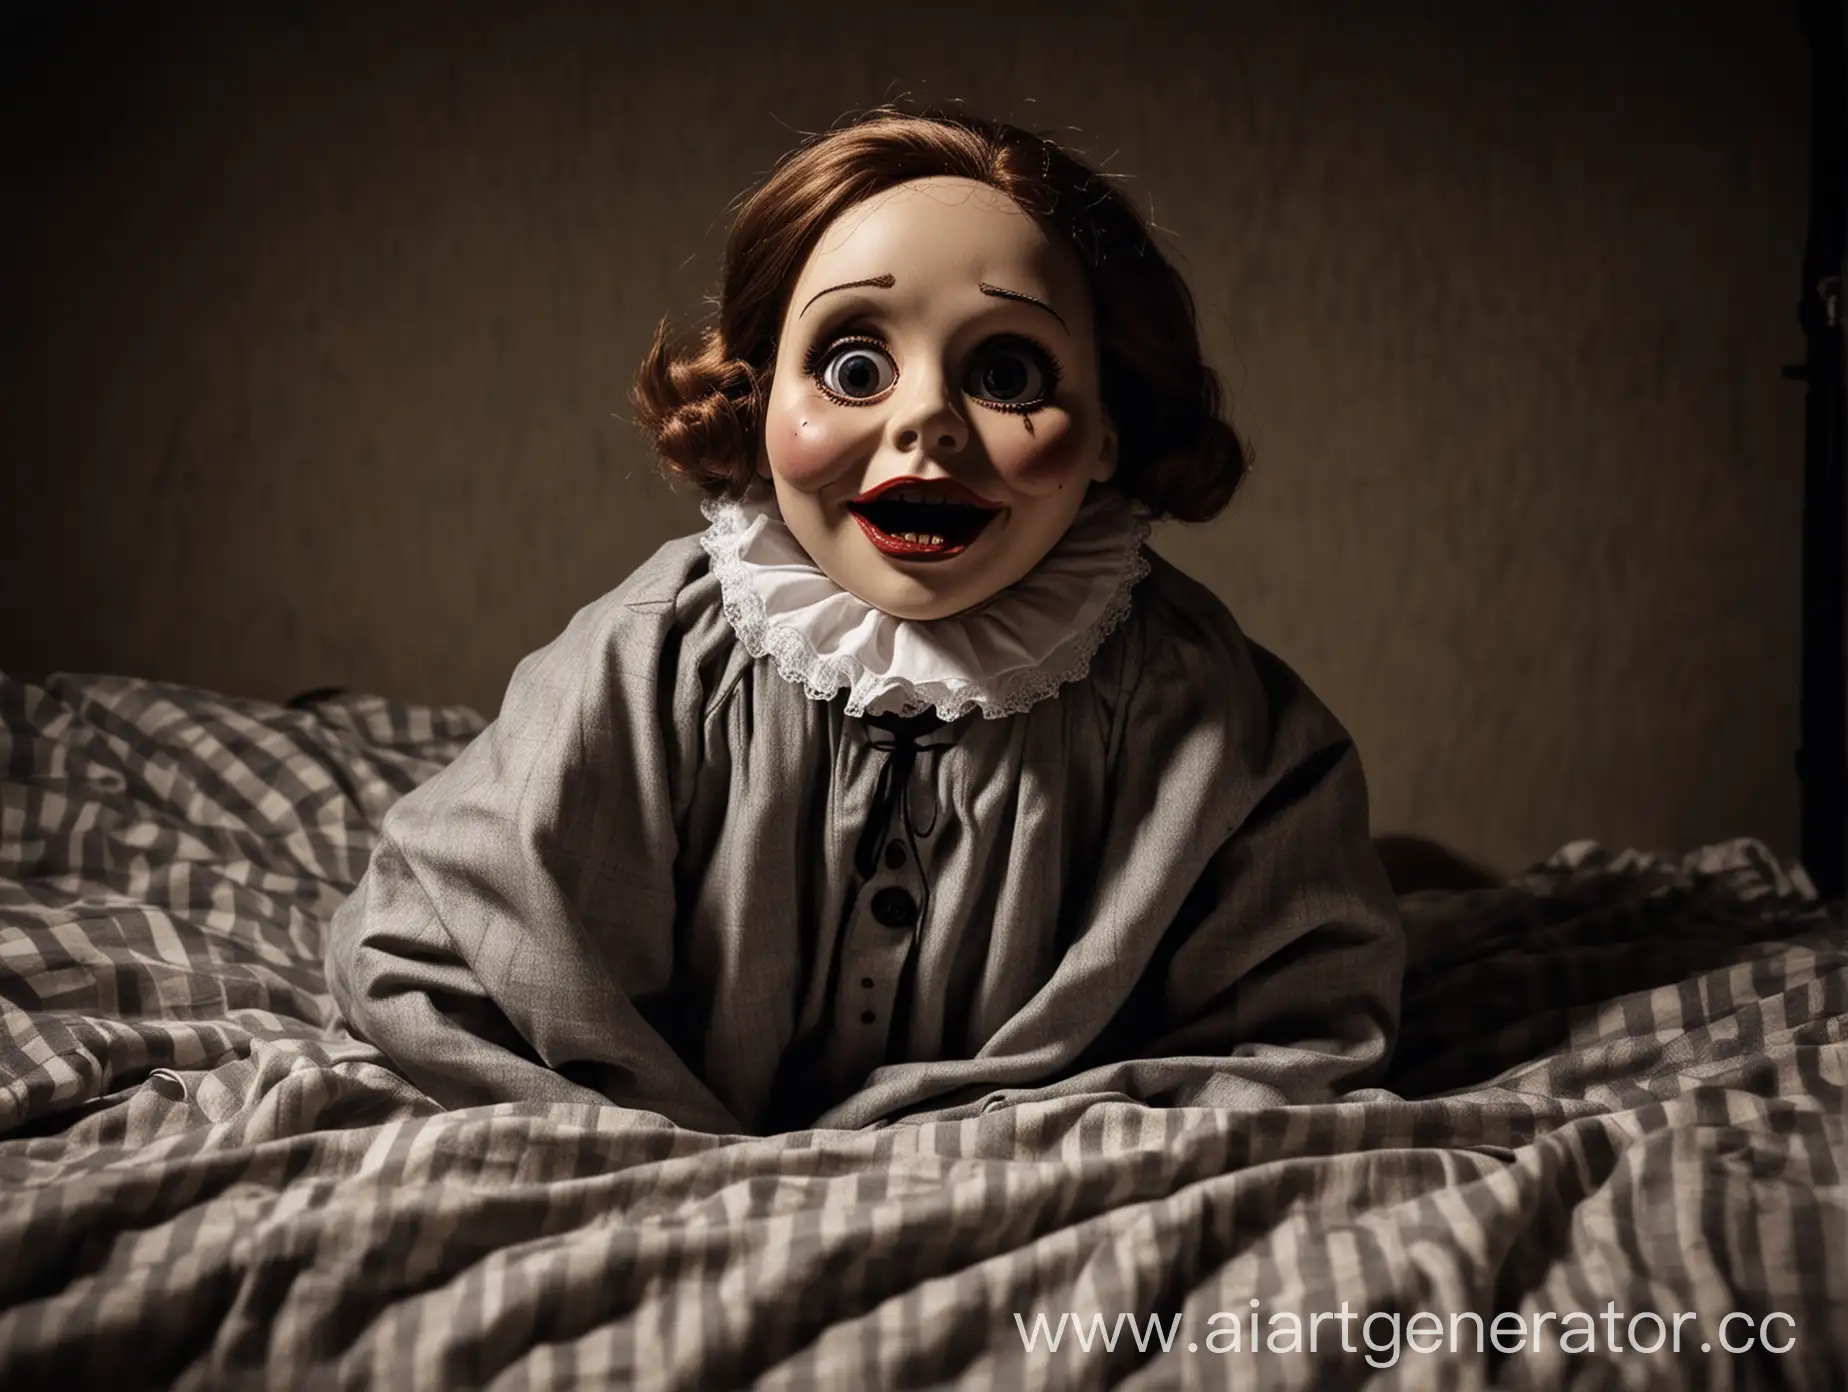 блогер супер сус в виде форфоровой куклы 20 века стилизованой под фильм ужасов пришедшей в кромешной тьме ночи, ракурс смотрящего будто камера это человек смотрит из-под одеяла лёжа в своей комнате на кровати